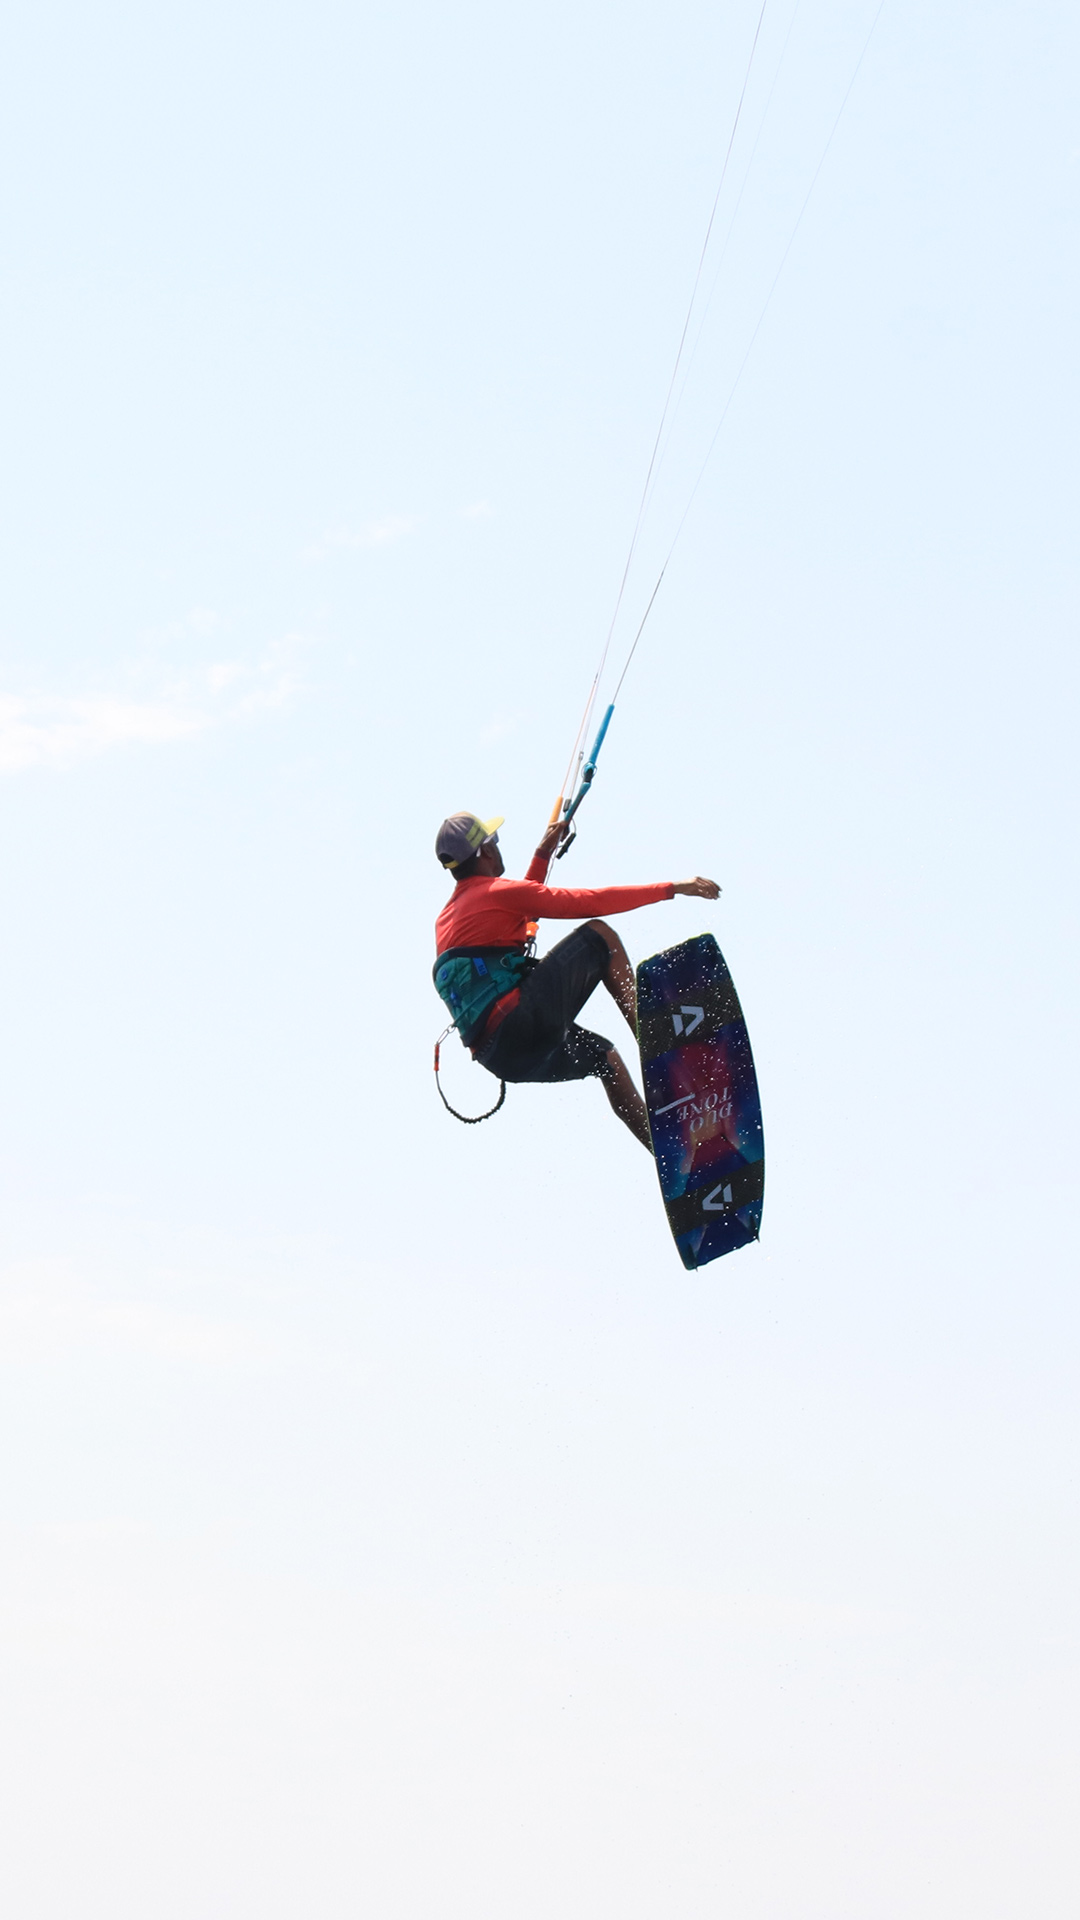 Le moniteur de kitesurf survole le ciel du spot de Safaga après un saut avec son matériel de kitesurf.